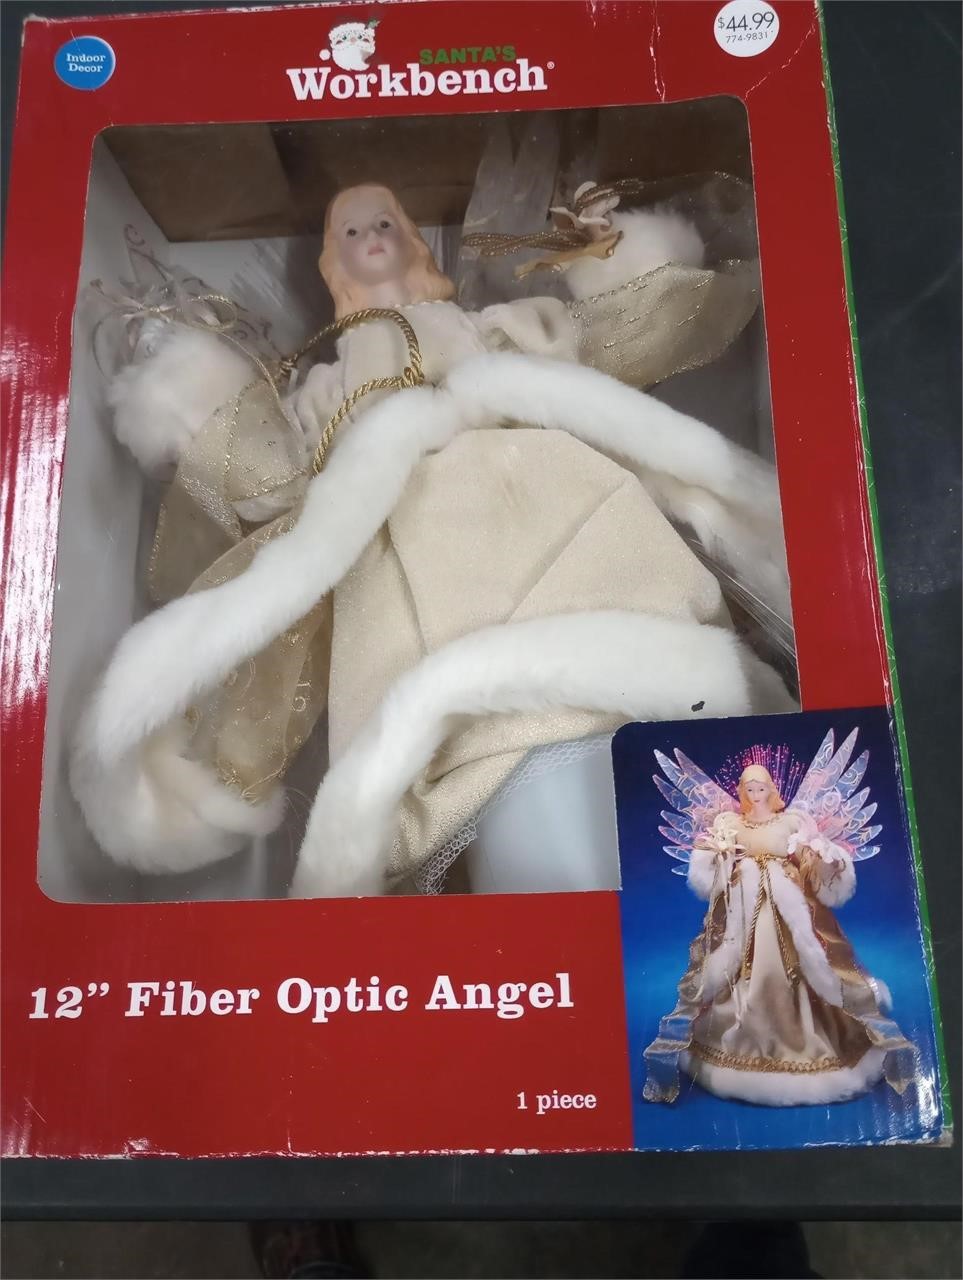 Fiber optic angel